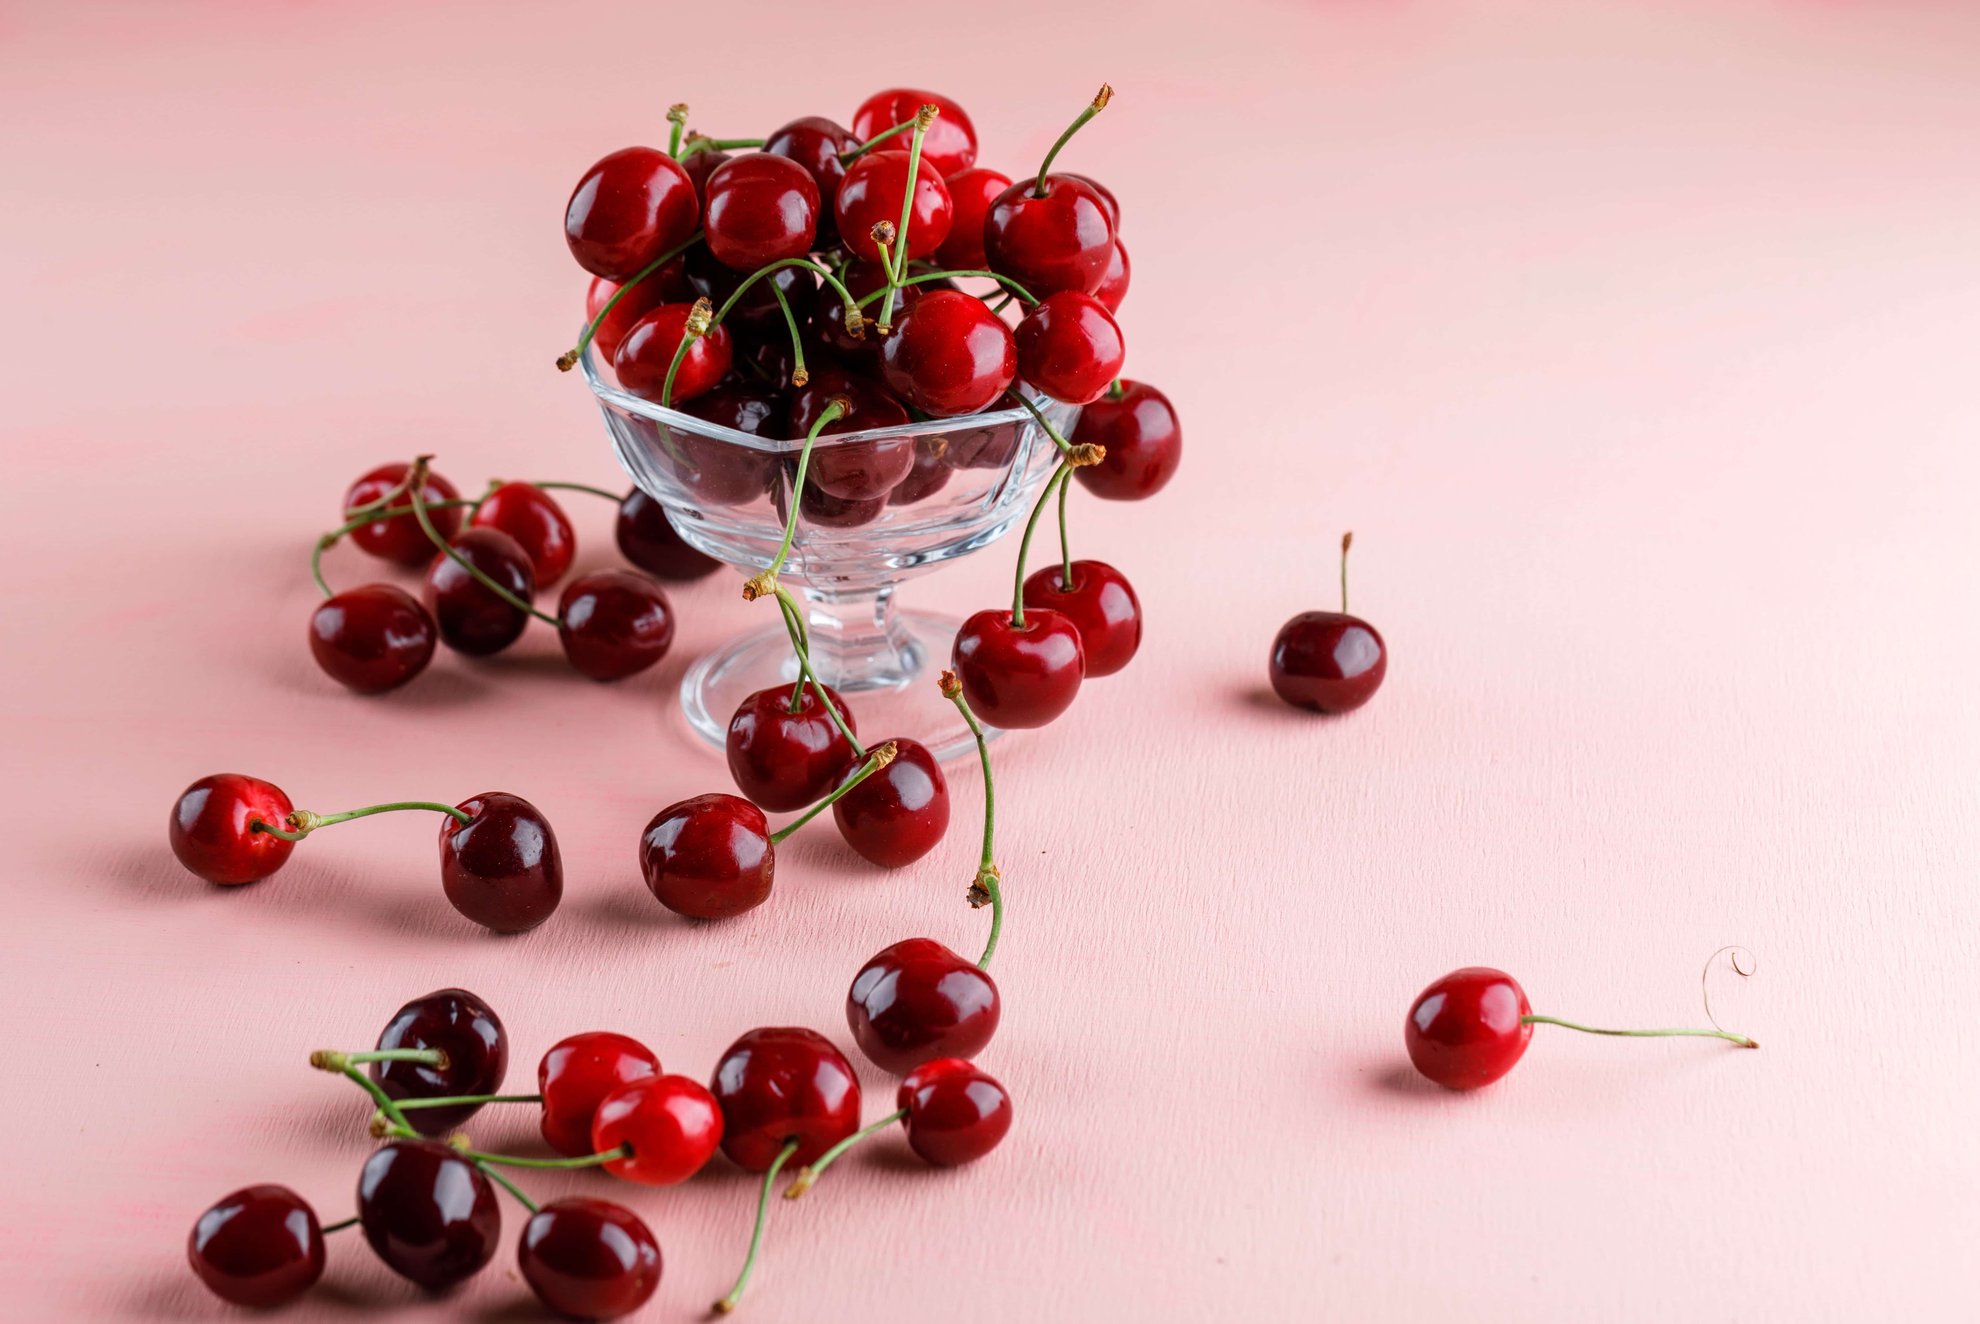 cherries-vase-pink-surface-min-min (1)